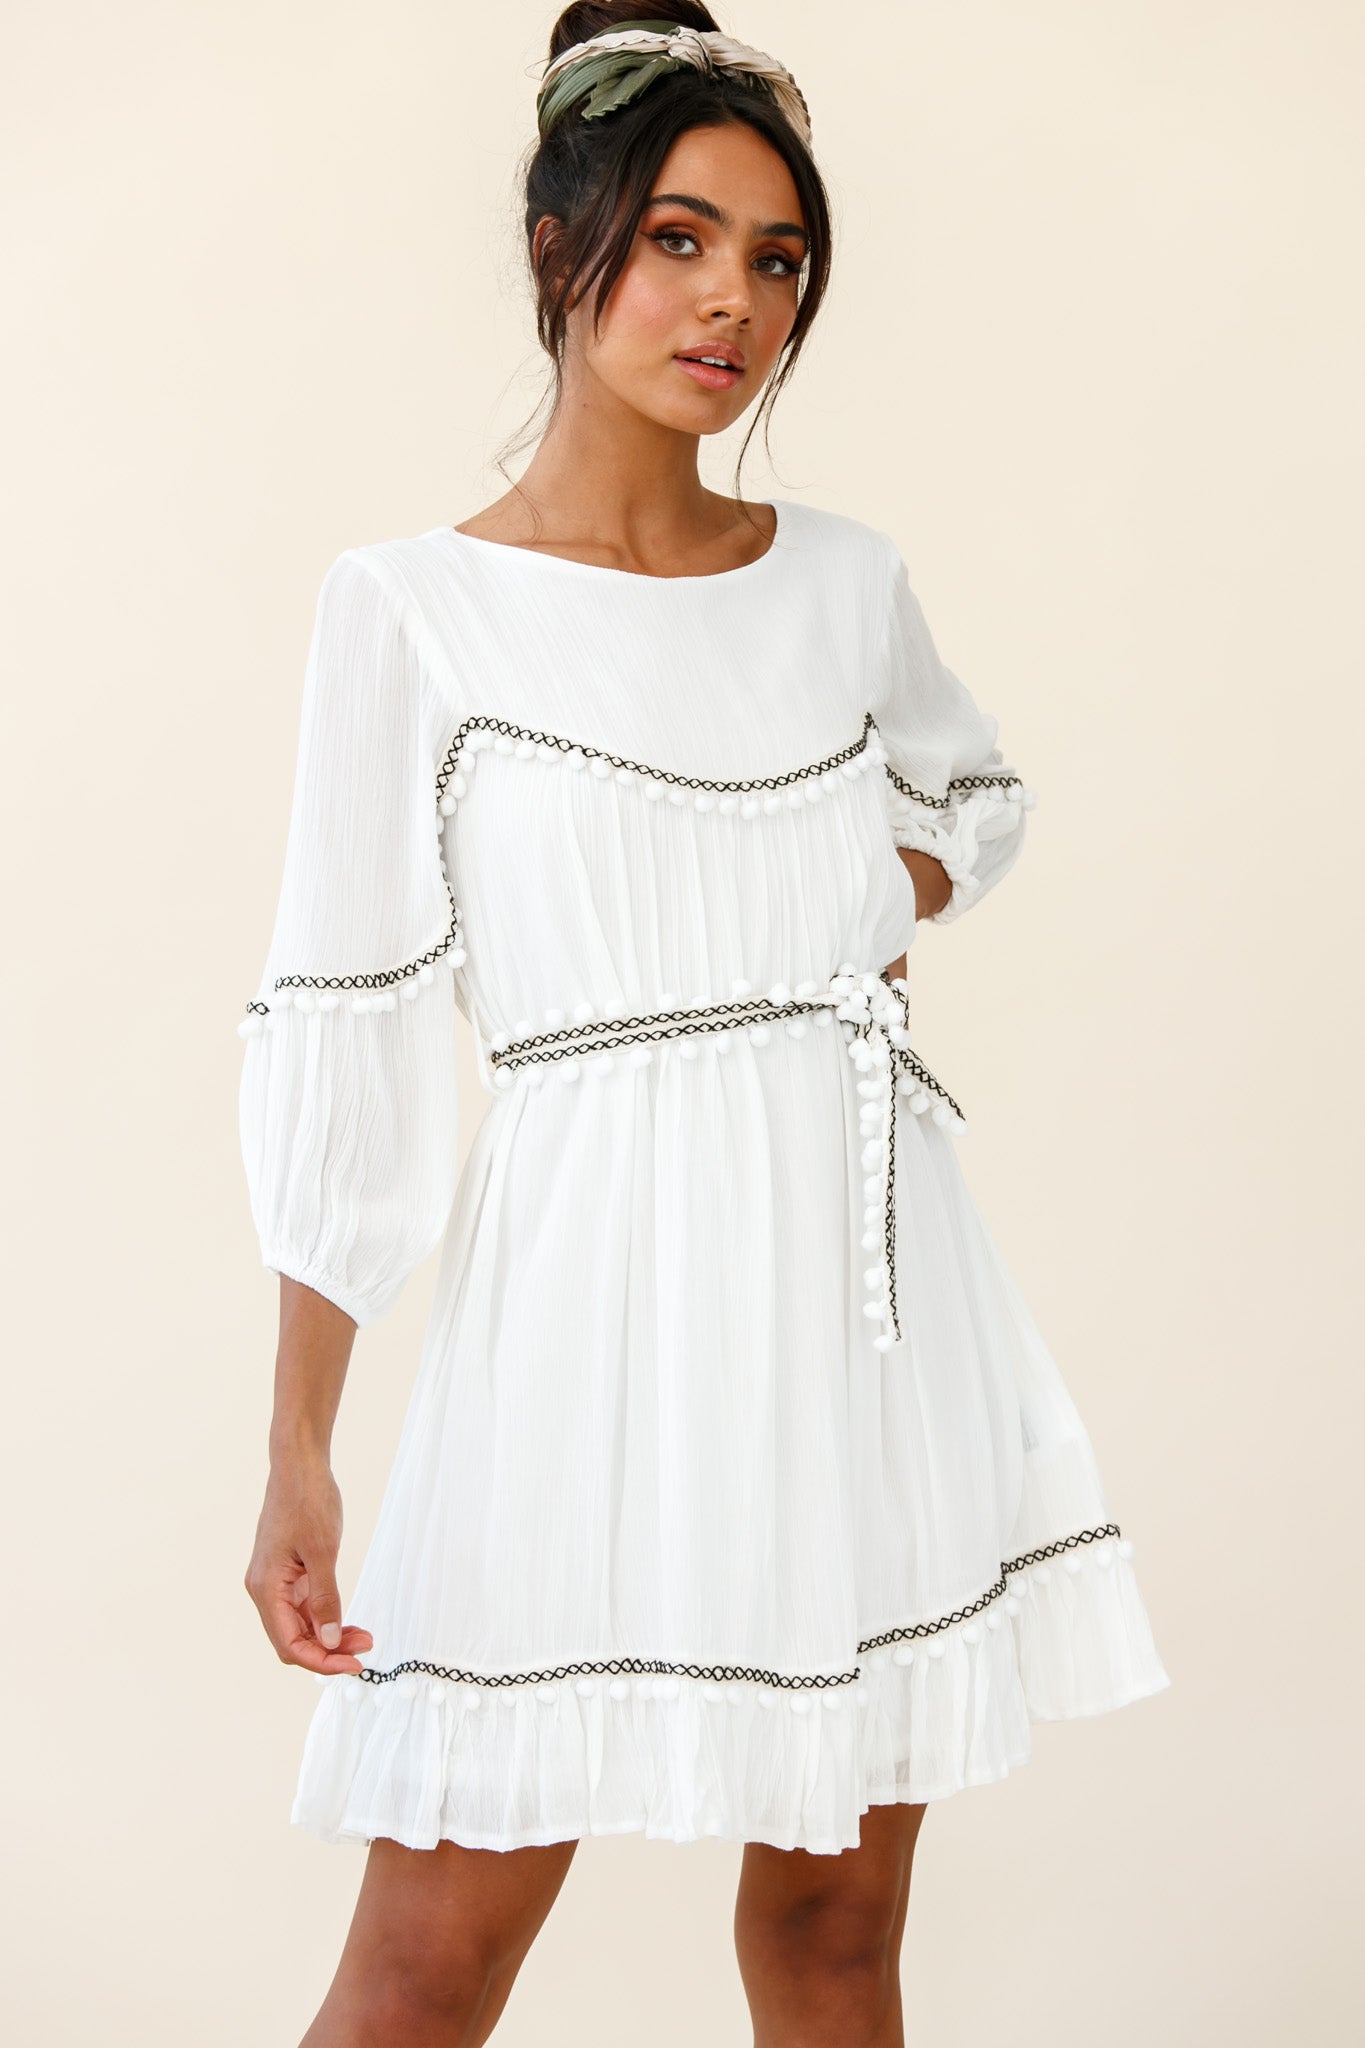 Sunflower Lace Pom Pom Trim Girl Dress in White – 2BUNNIES